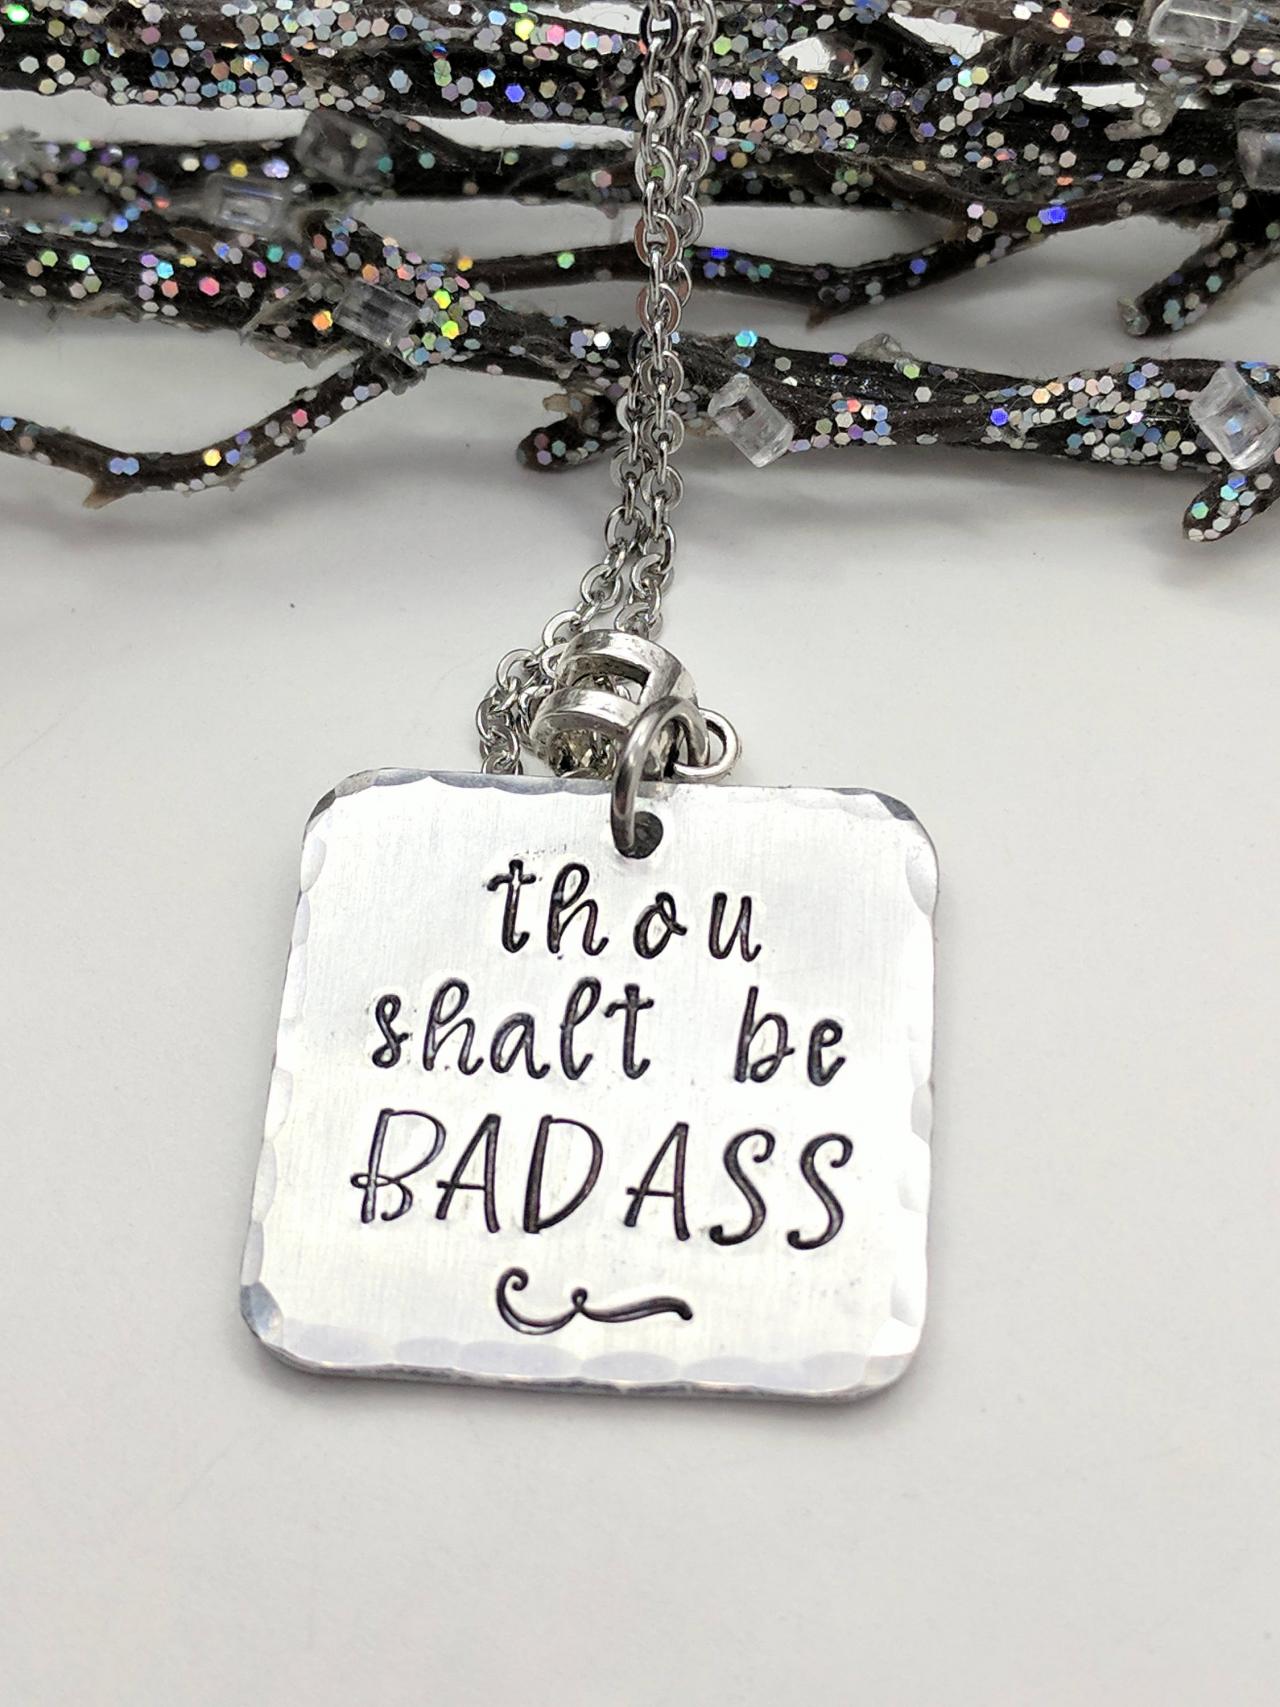 Thou Shalt Be Badass - Badass Hand Stamped Necklace - Badass Woman - Badass Hand Stamped Jewelry - Quote Necklace - Statement Necklace - Metal